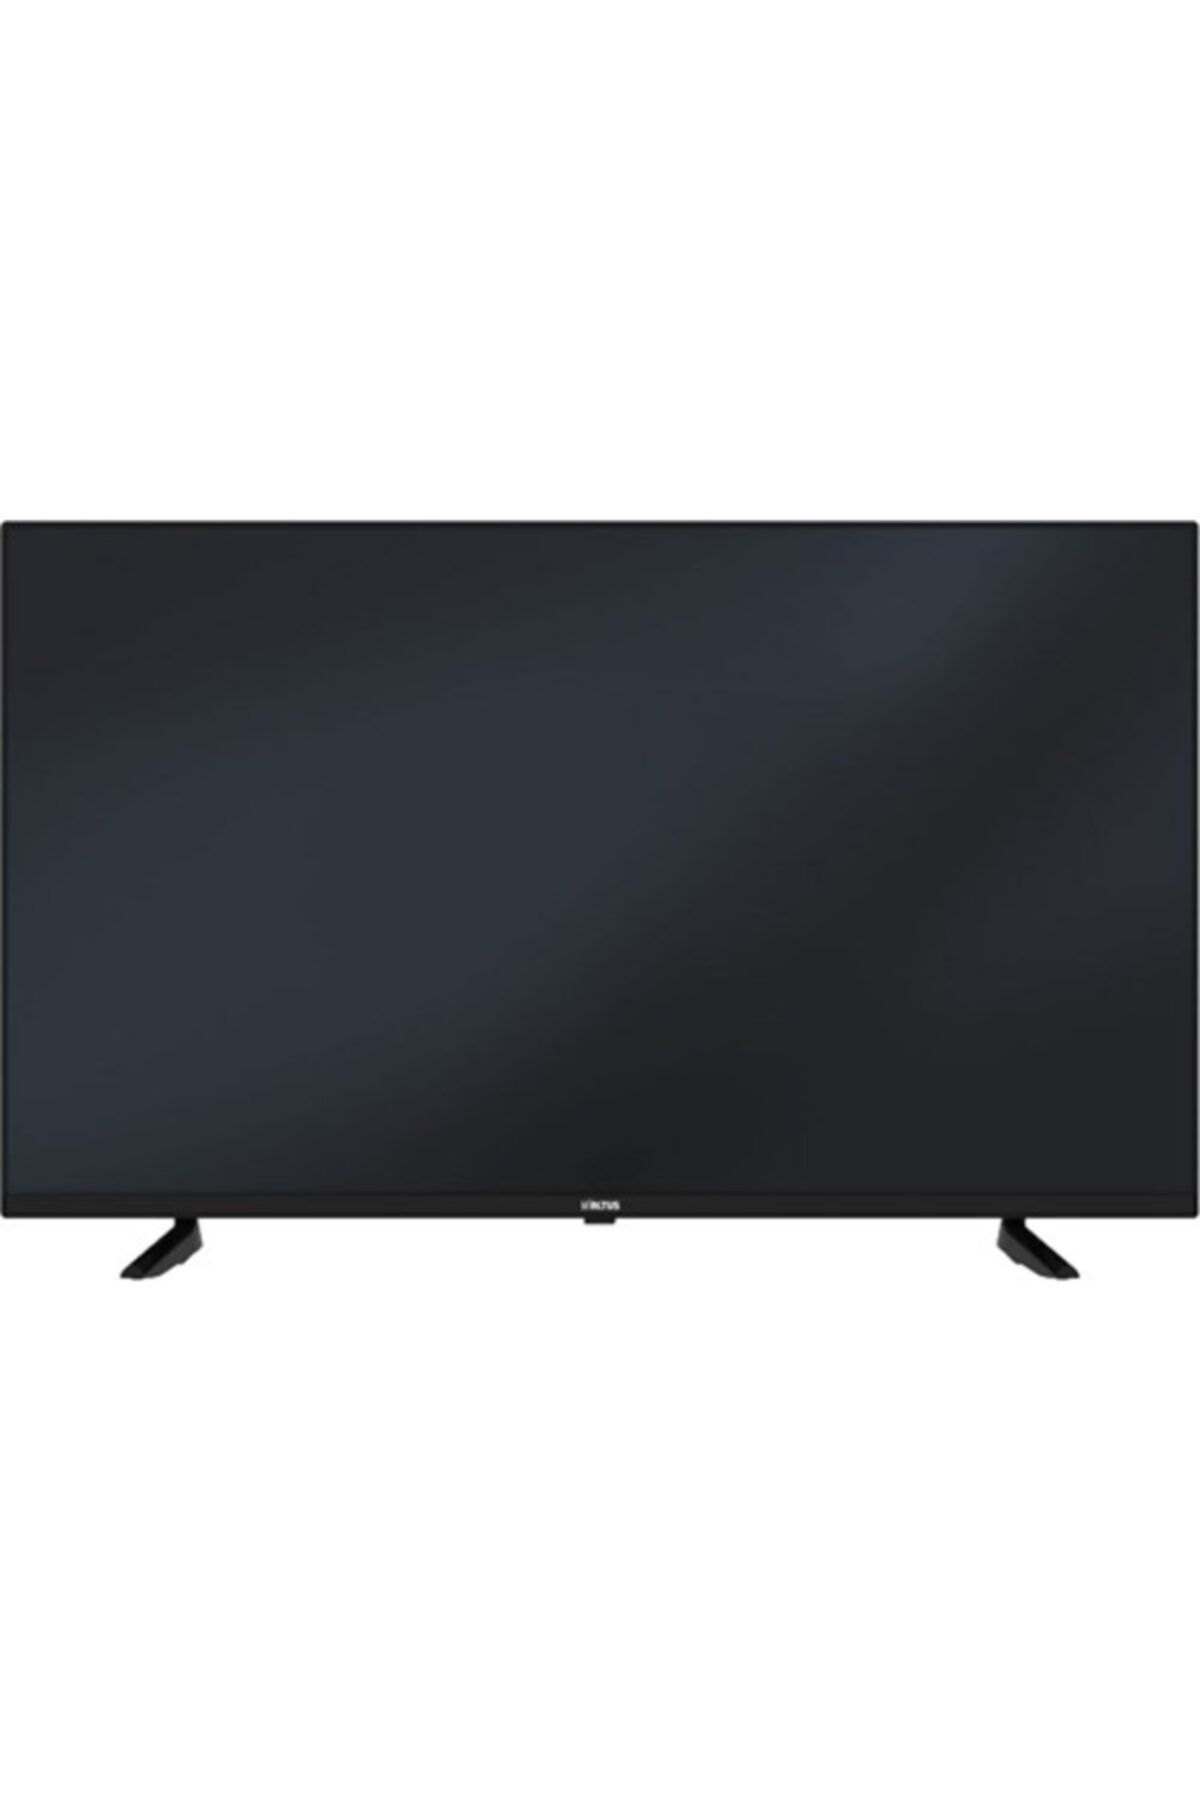 Телевизор grundig 55 gfu 7800b. Телевизор Xiaomi l32m6-6arg. L32m6-6arg Xiaomi. L32m6-ARG. Xiaomi mi TV p1 l32m6-6 ARG плазменный или кристаллический.